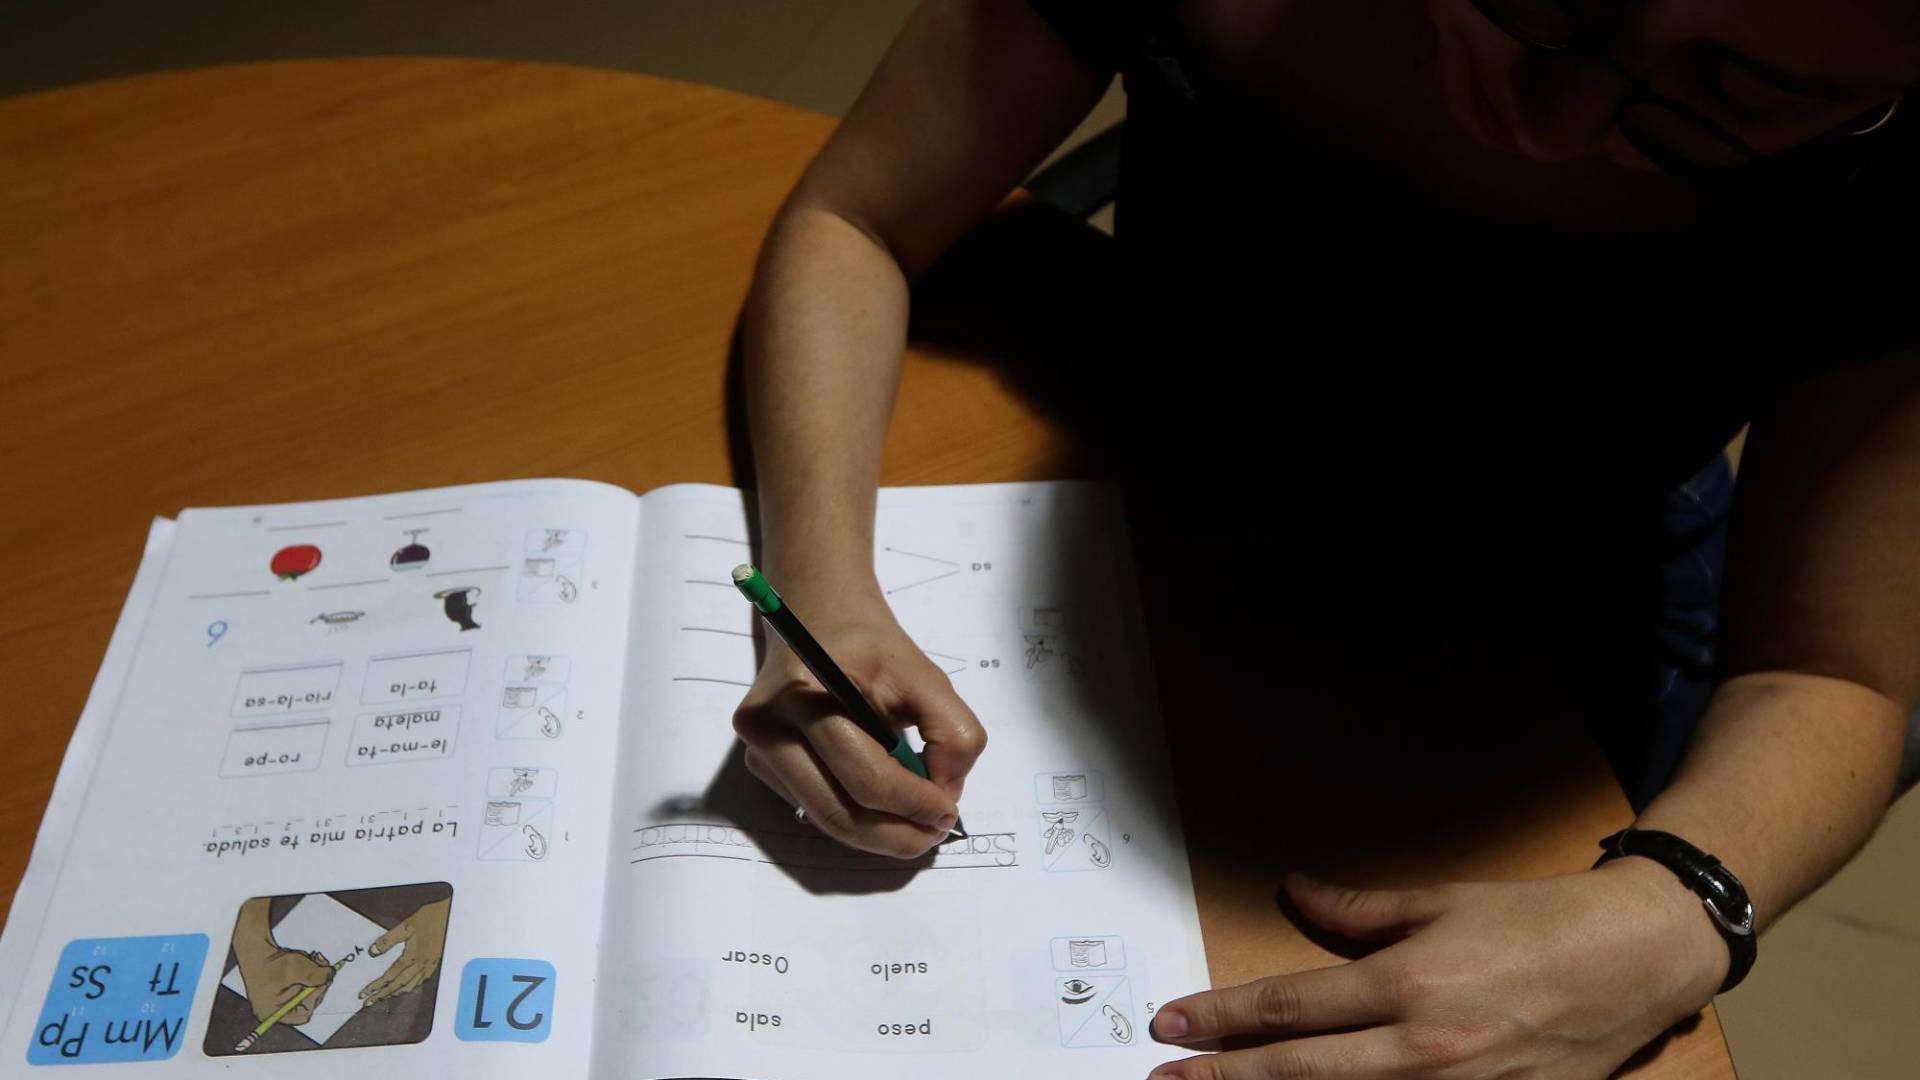 $!El método cubano enseña a las personas las letras y las relaciona con palabras e imágenes. Es similar al conocido Nacho hondureño, un libro estandarizado que -todavía- se usa para enseñar a los niños a leer y escribir.